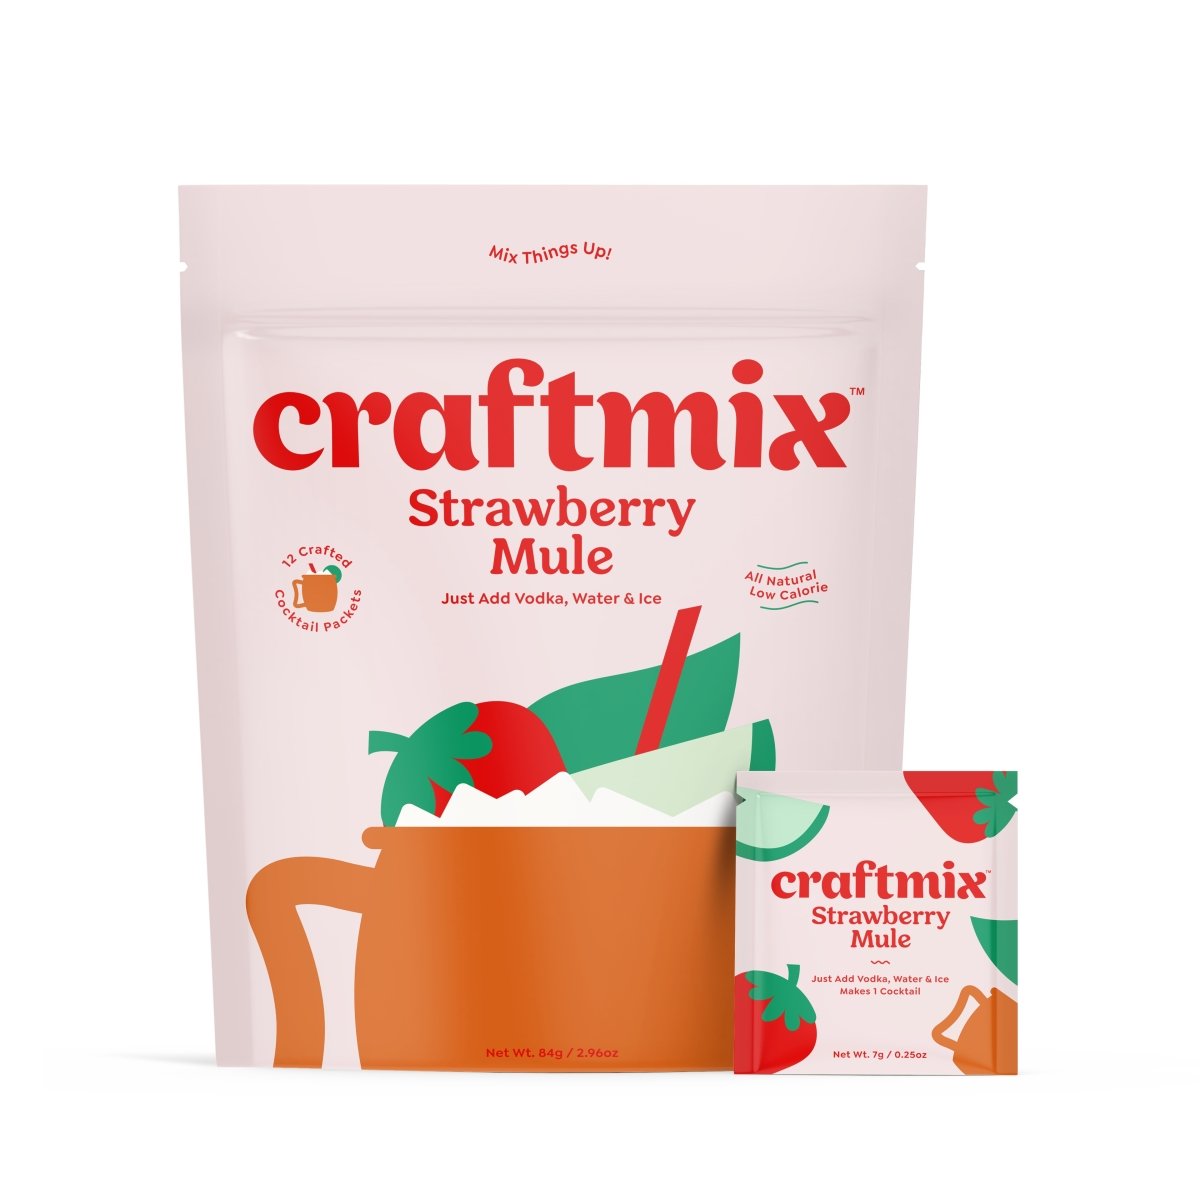 Craftmix Strawberry Mule, 36 Pack - lily & onyx